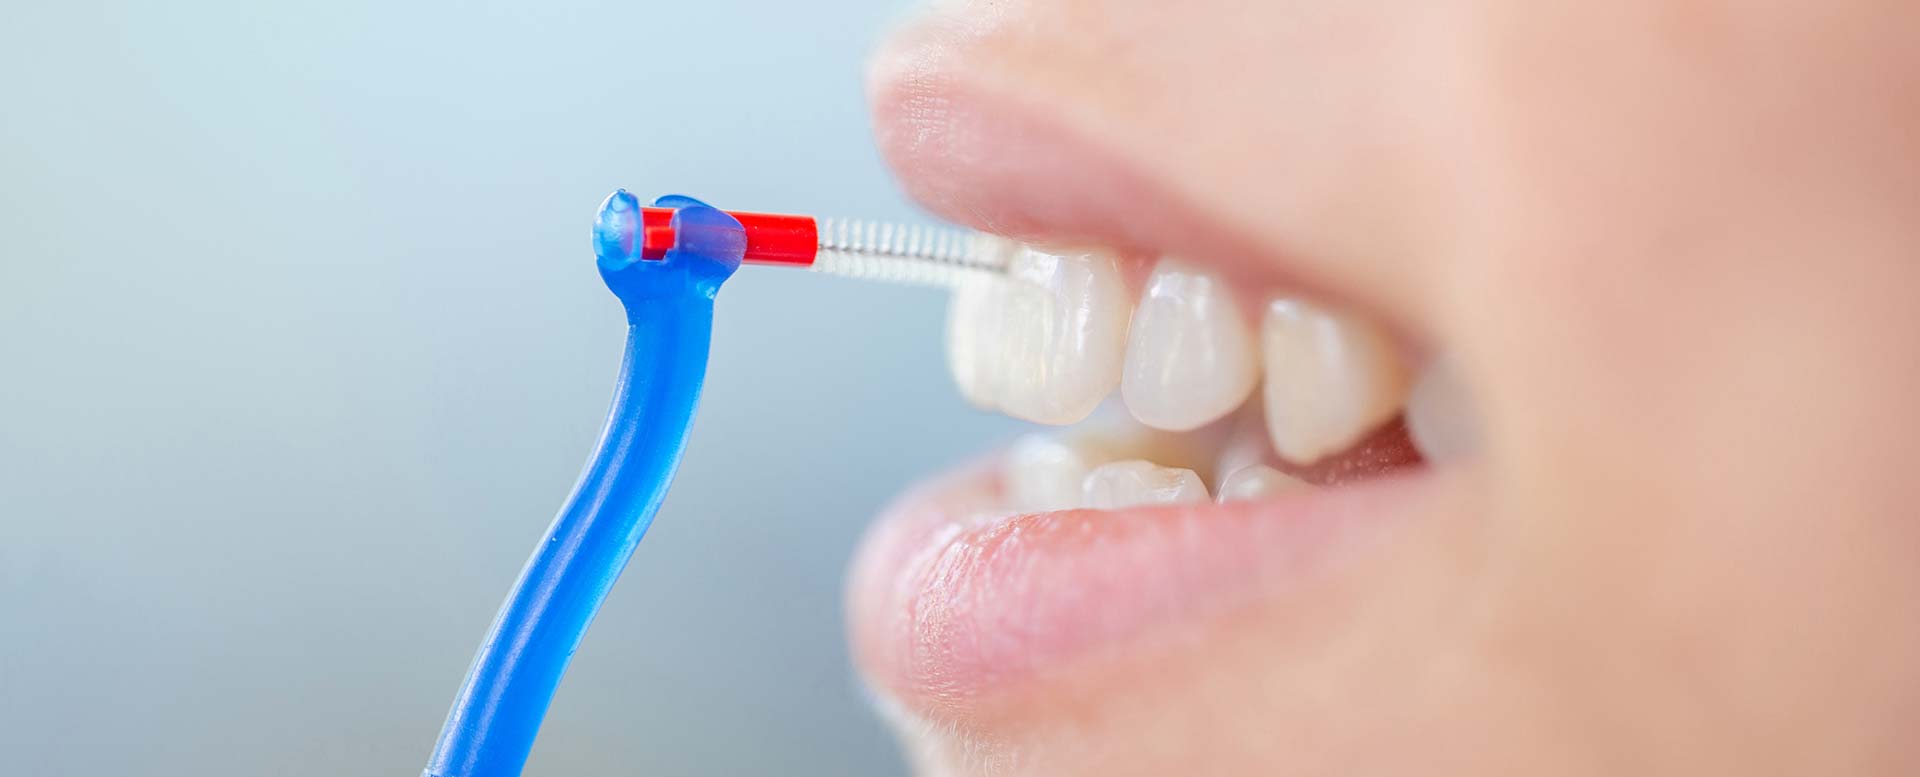 Zahnzwischenräume reinigen: So beugen Sie Karies und Paradontitis vor